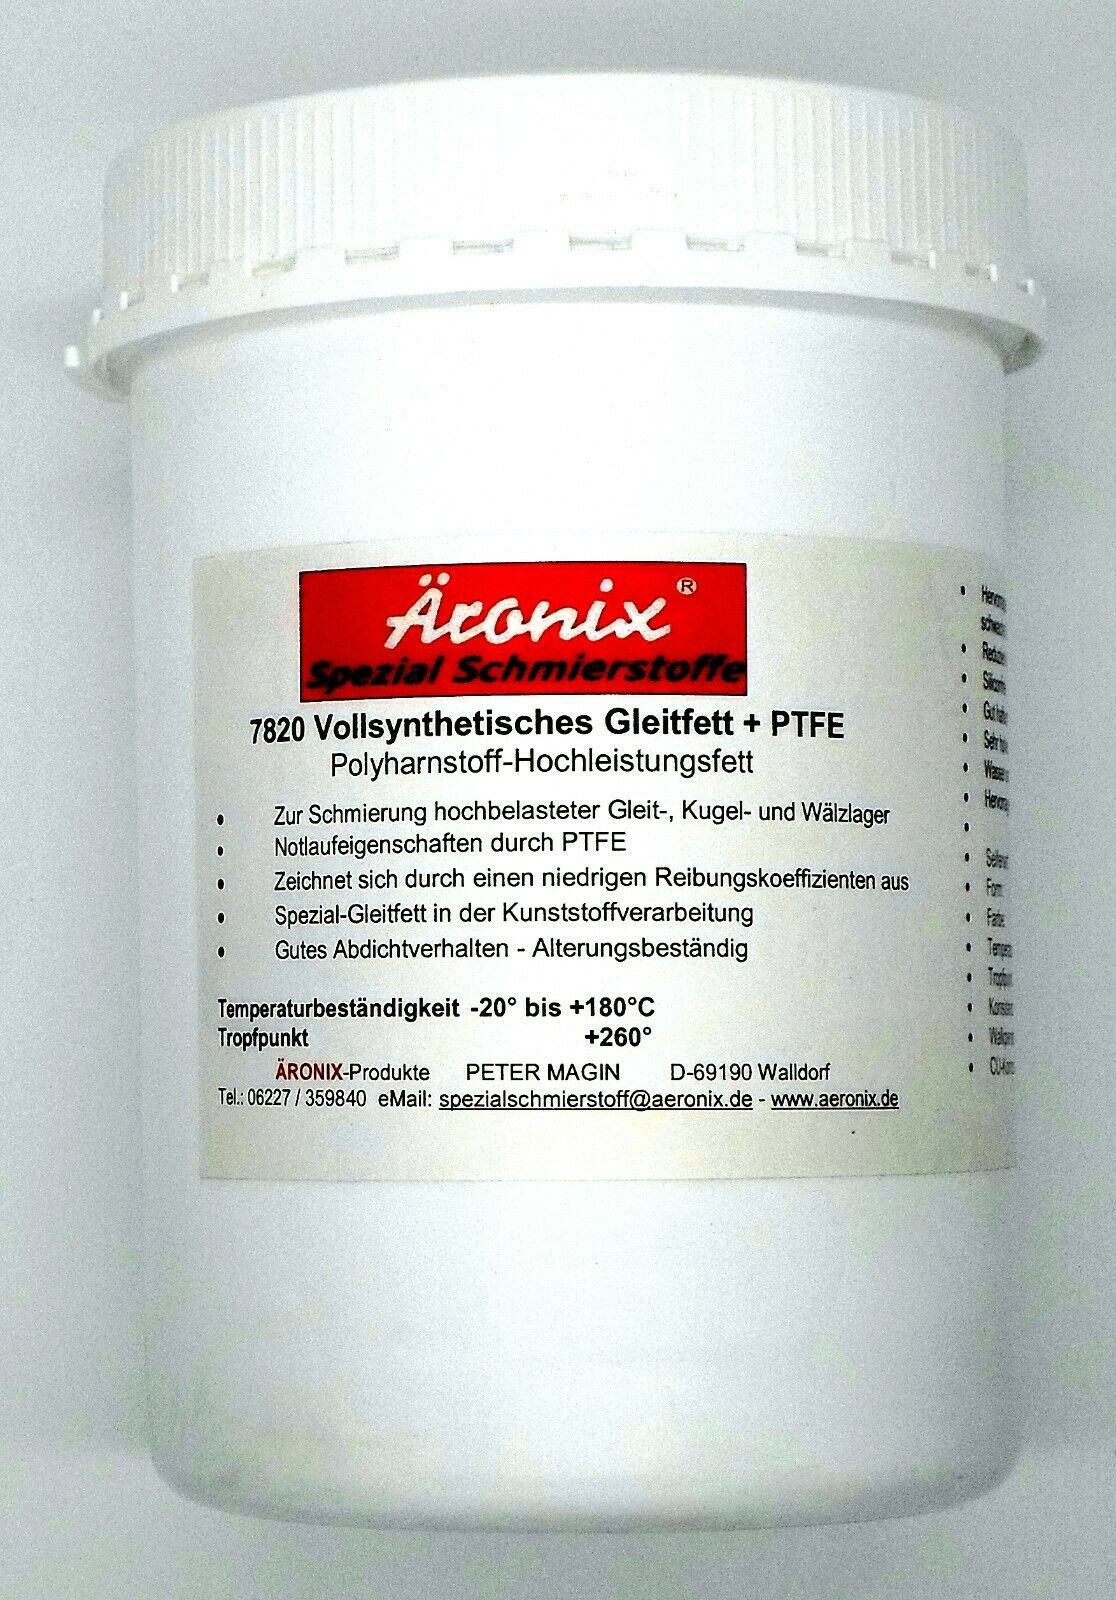 1 Kg Äronix 7820 Polyharnstoff Hochleistungs Fett + PTFE voll synthetisch  silikonfrei